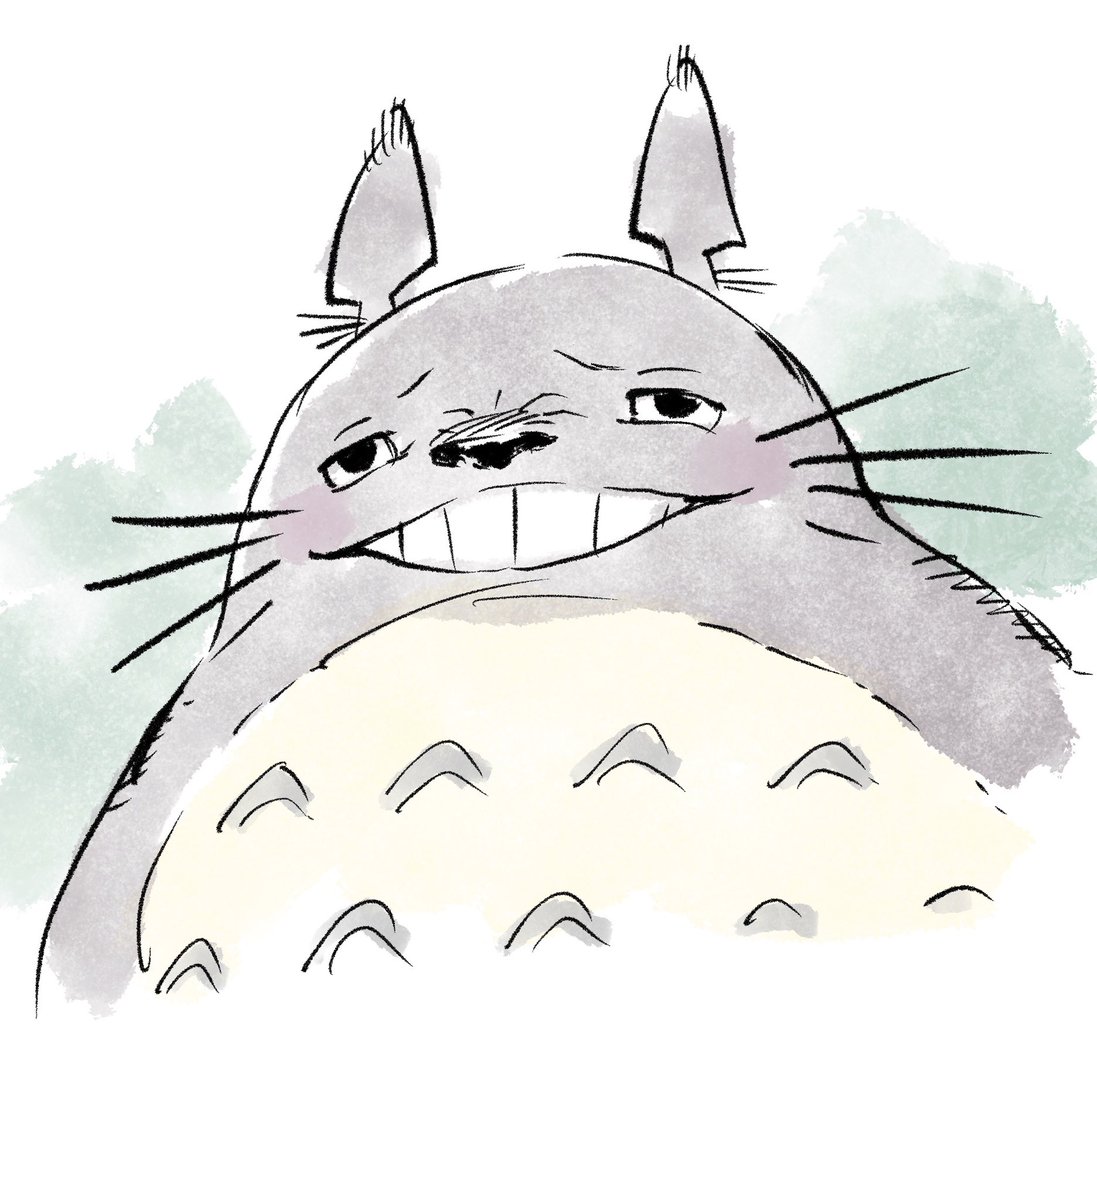 「昨日てきとうに描いた、嫌な表情のトトロ 」|アントンシクのイラスト